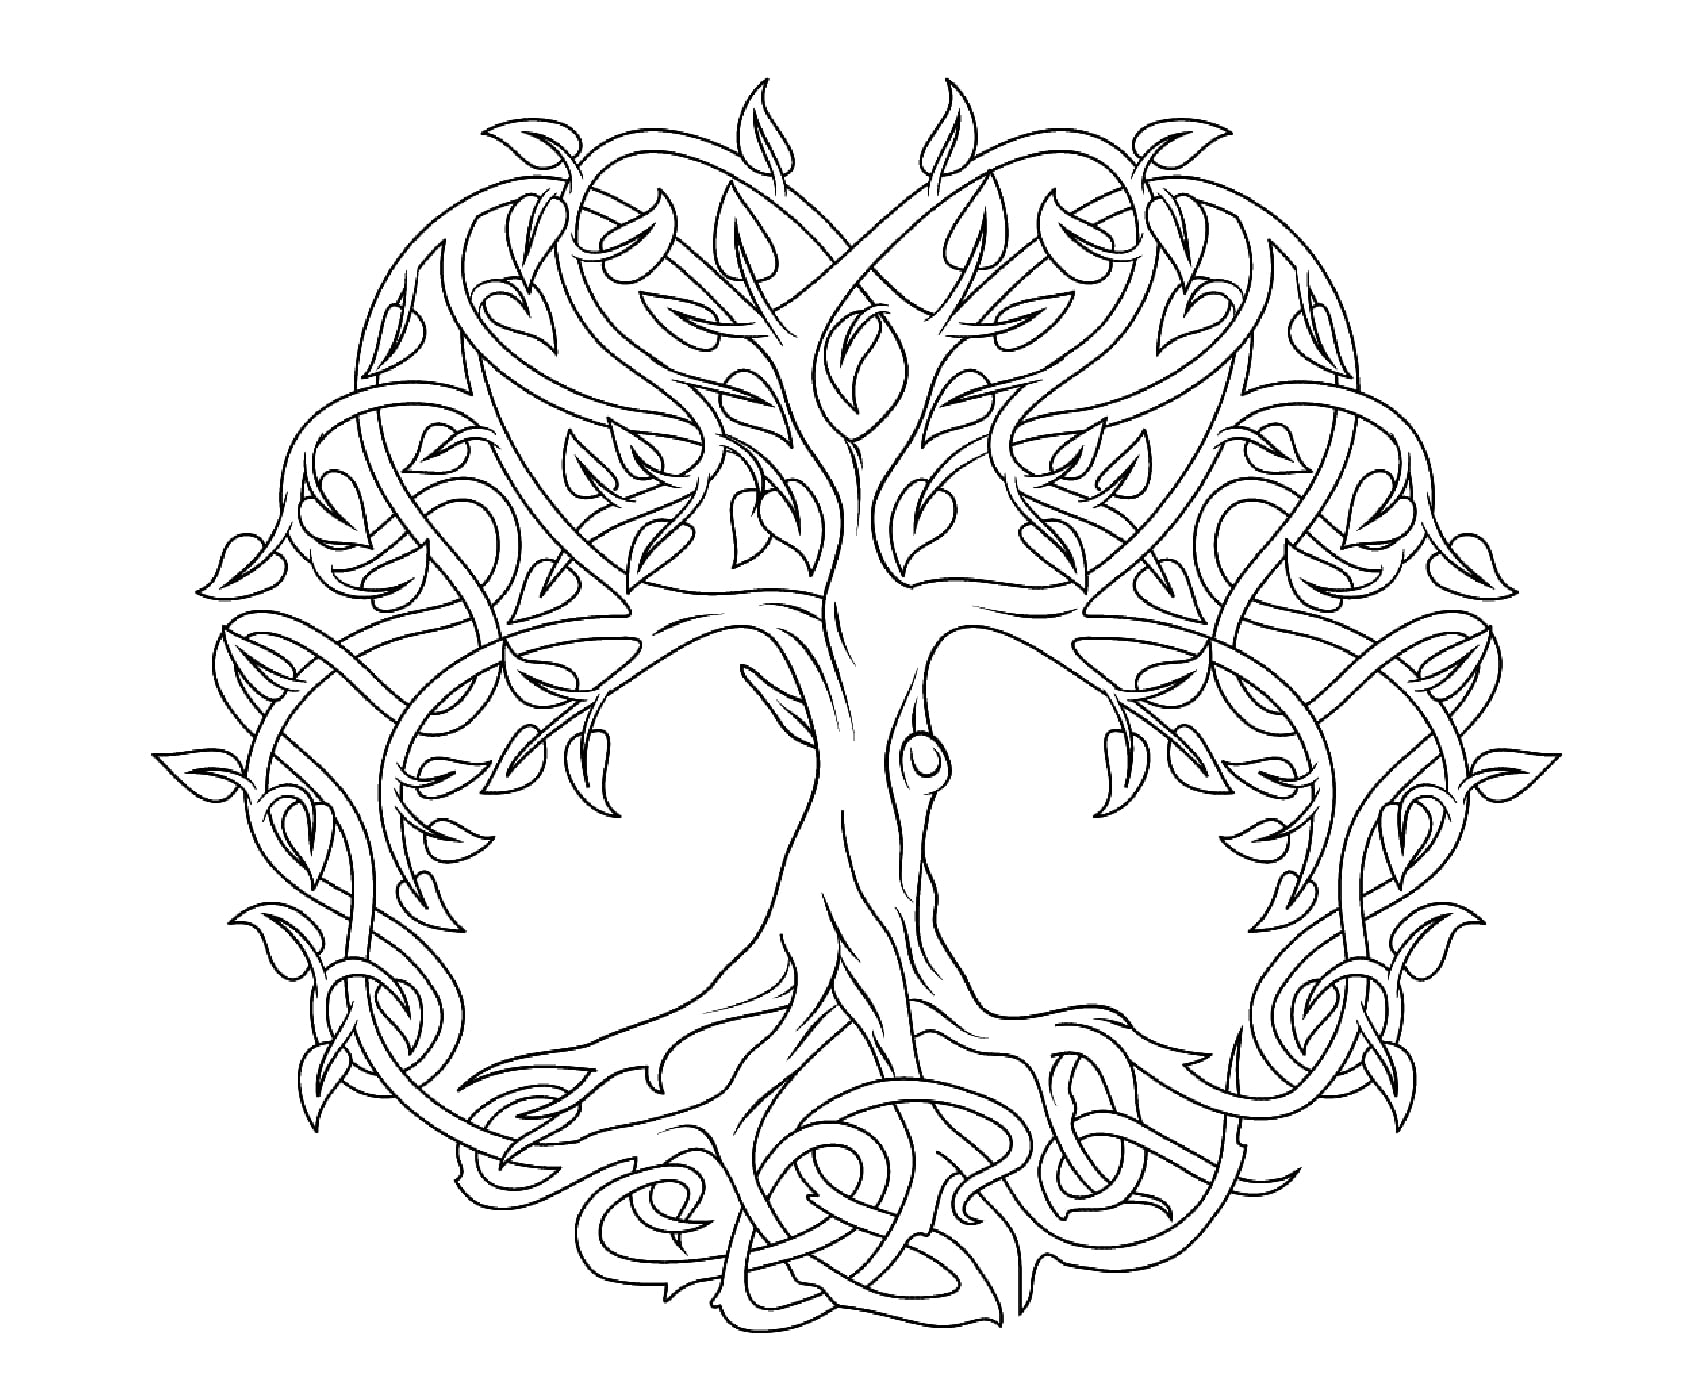 Relativ leicht auszumalende Details für ein sehr originelles und hochwertiges Ausmalbild von einem Mandala in Form eines Baumes.